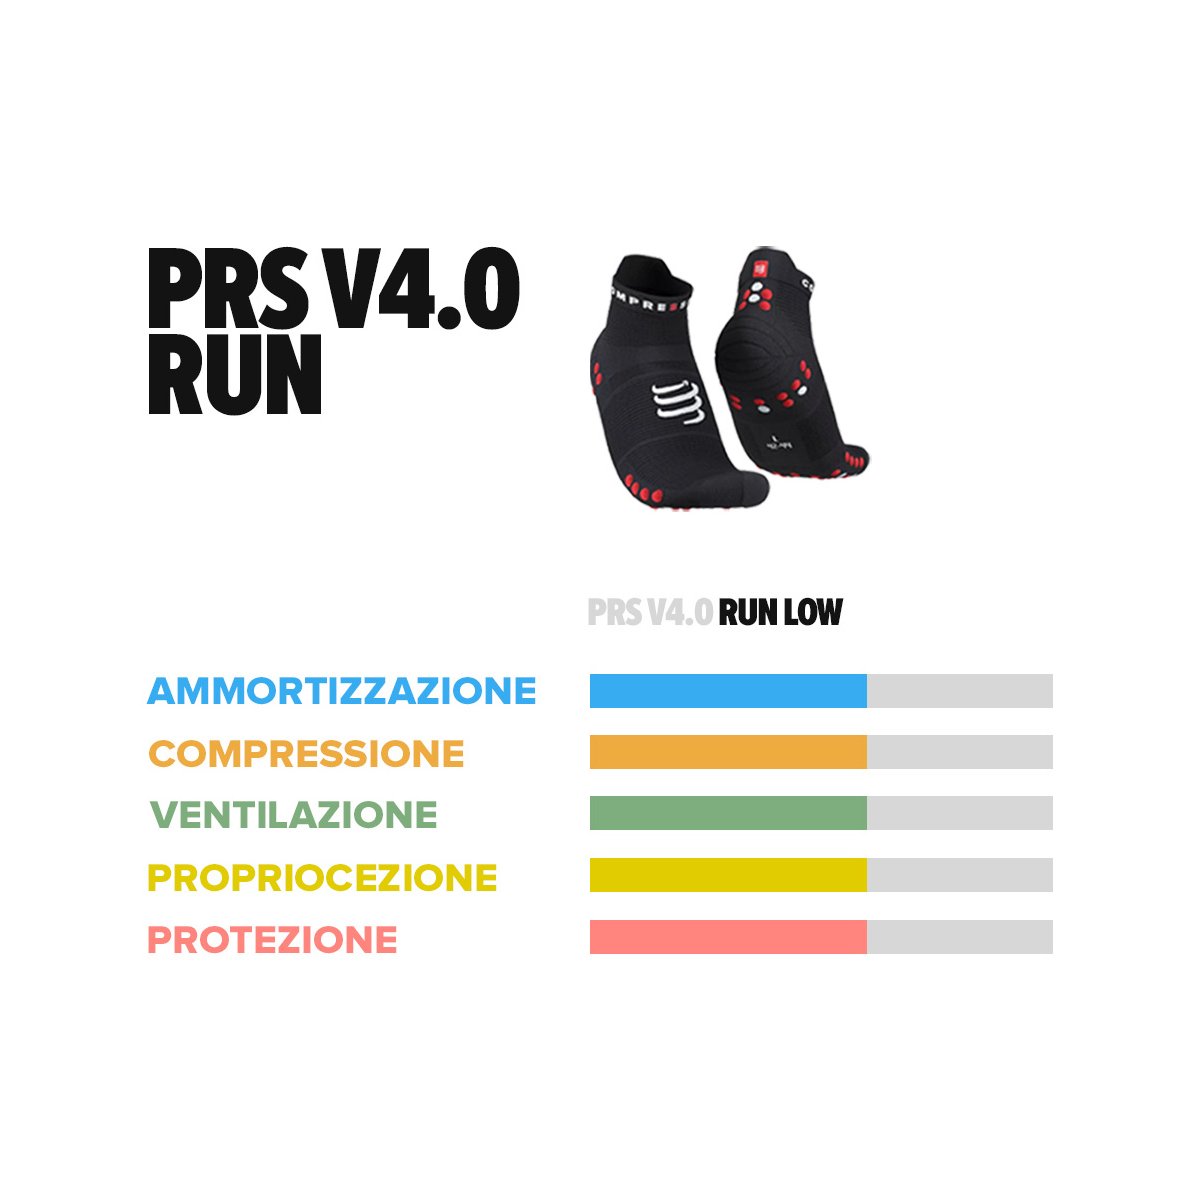 Pro Racing Socks v4.0 Run Low